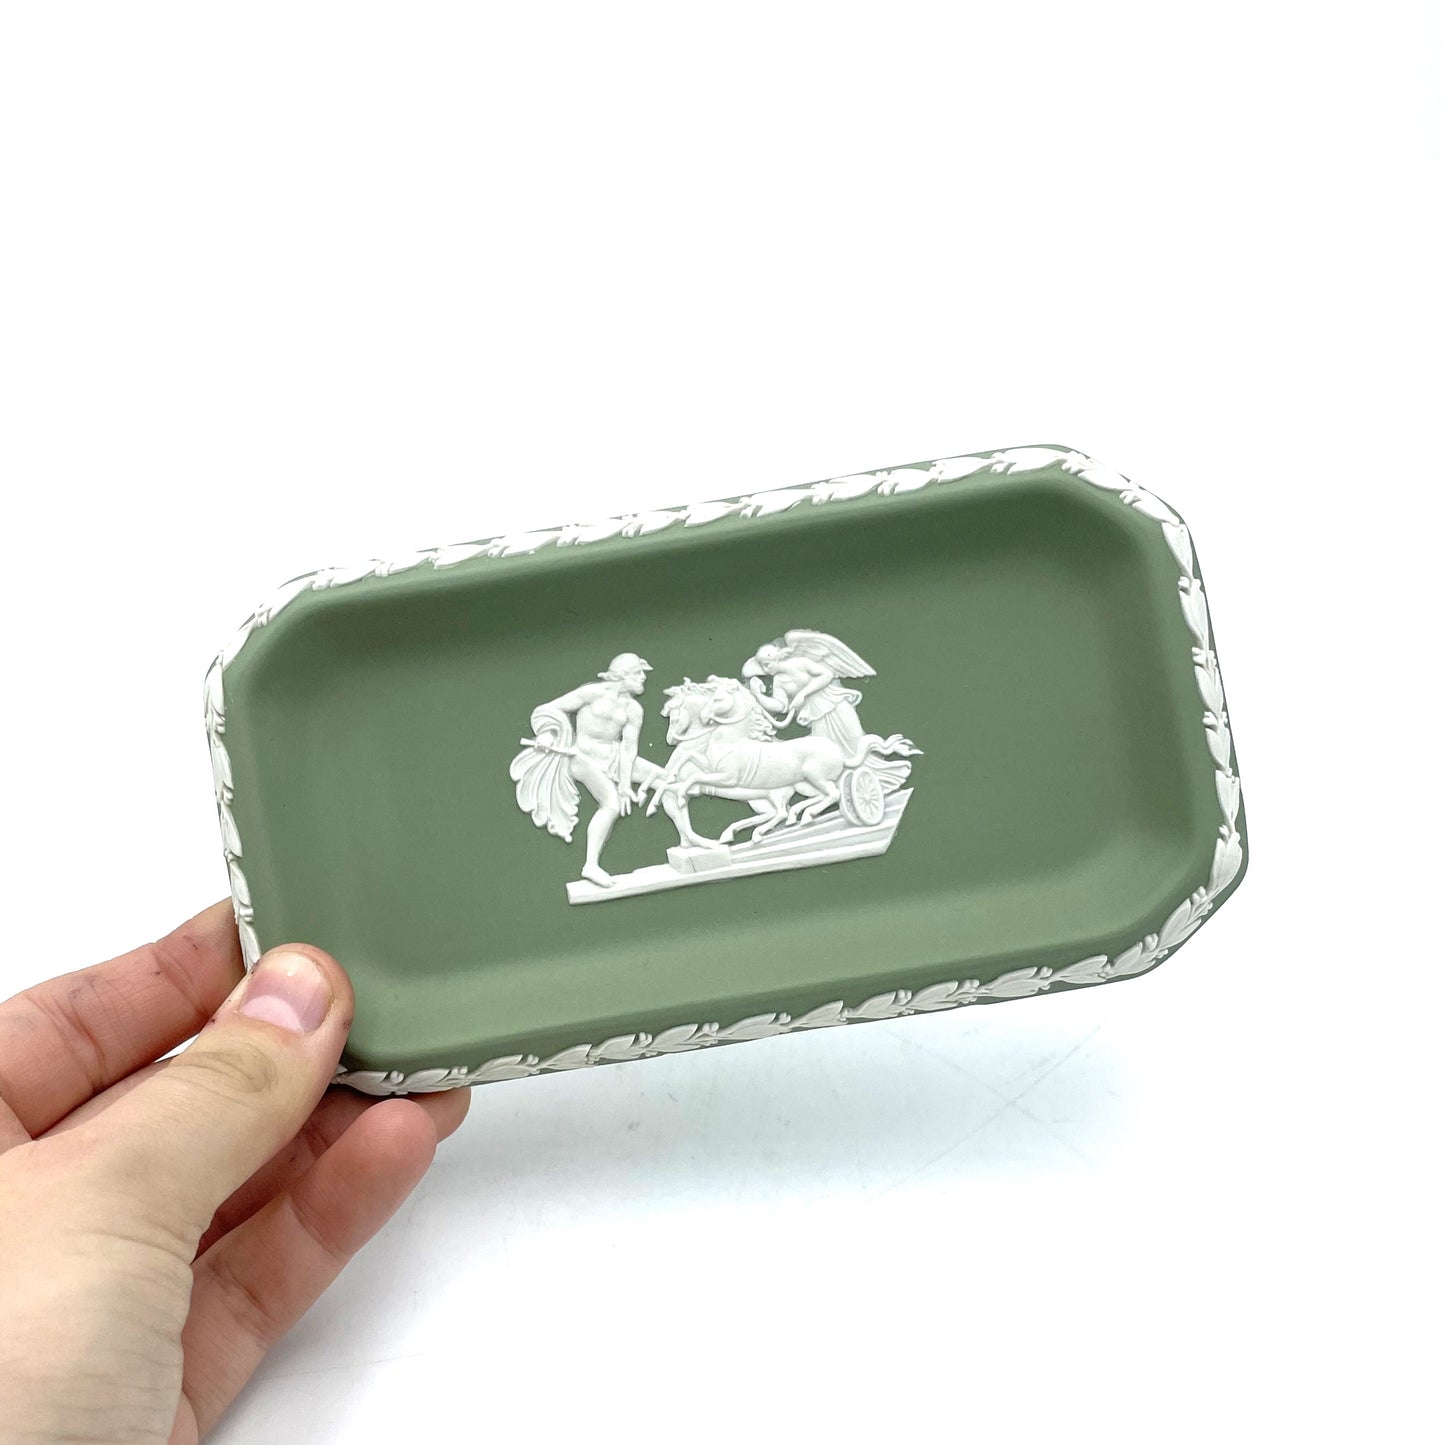 Green Wedgwood Jasperware Rectangular Dish - 15.5cm